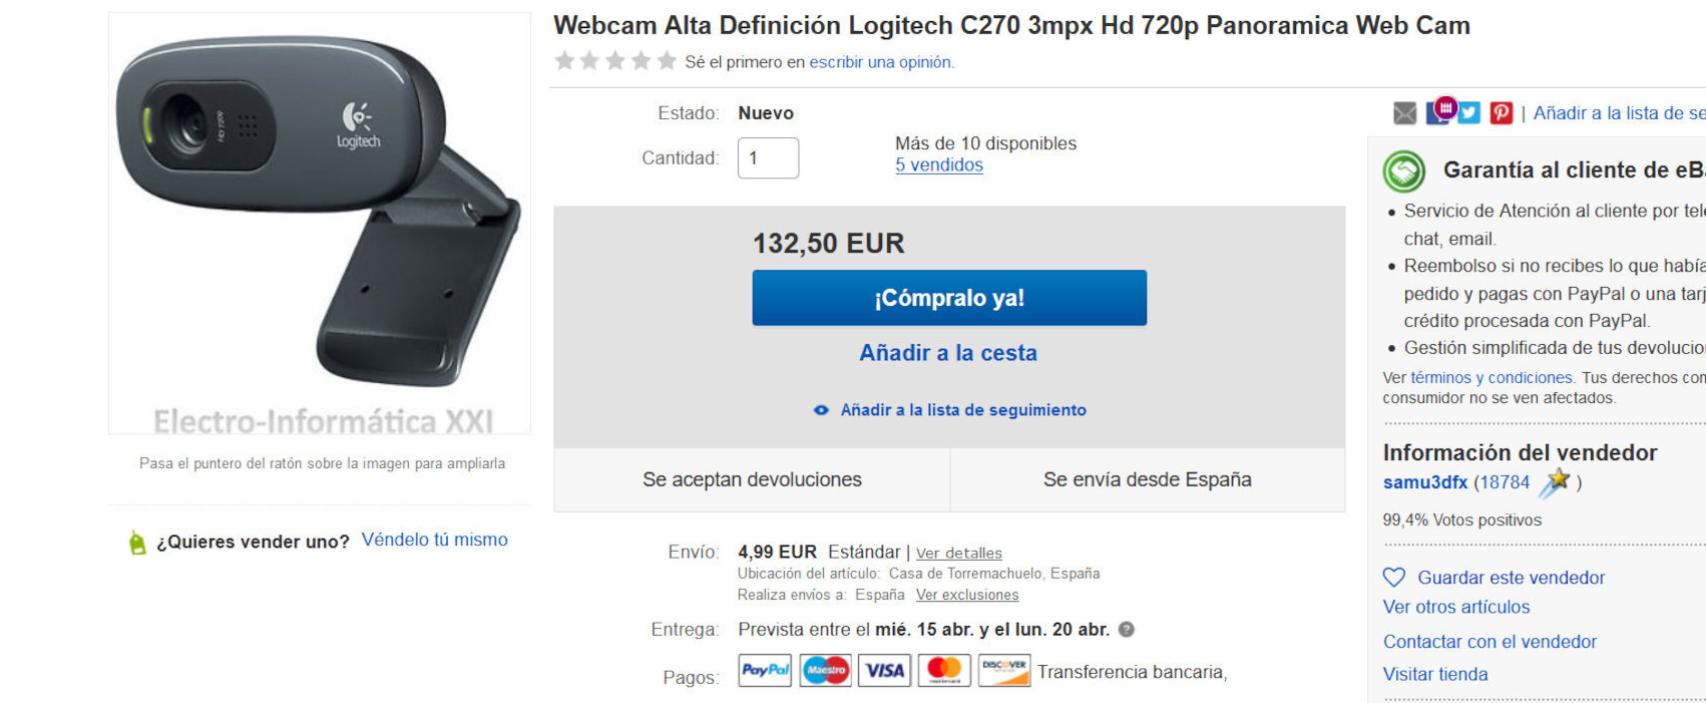 La Logitech C270, ofertada en eBay a un precio casi 100 € superior de su PVP